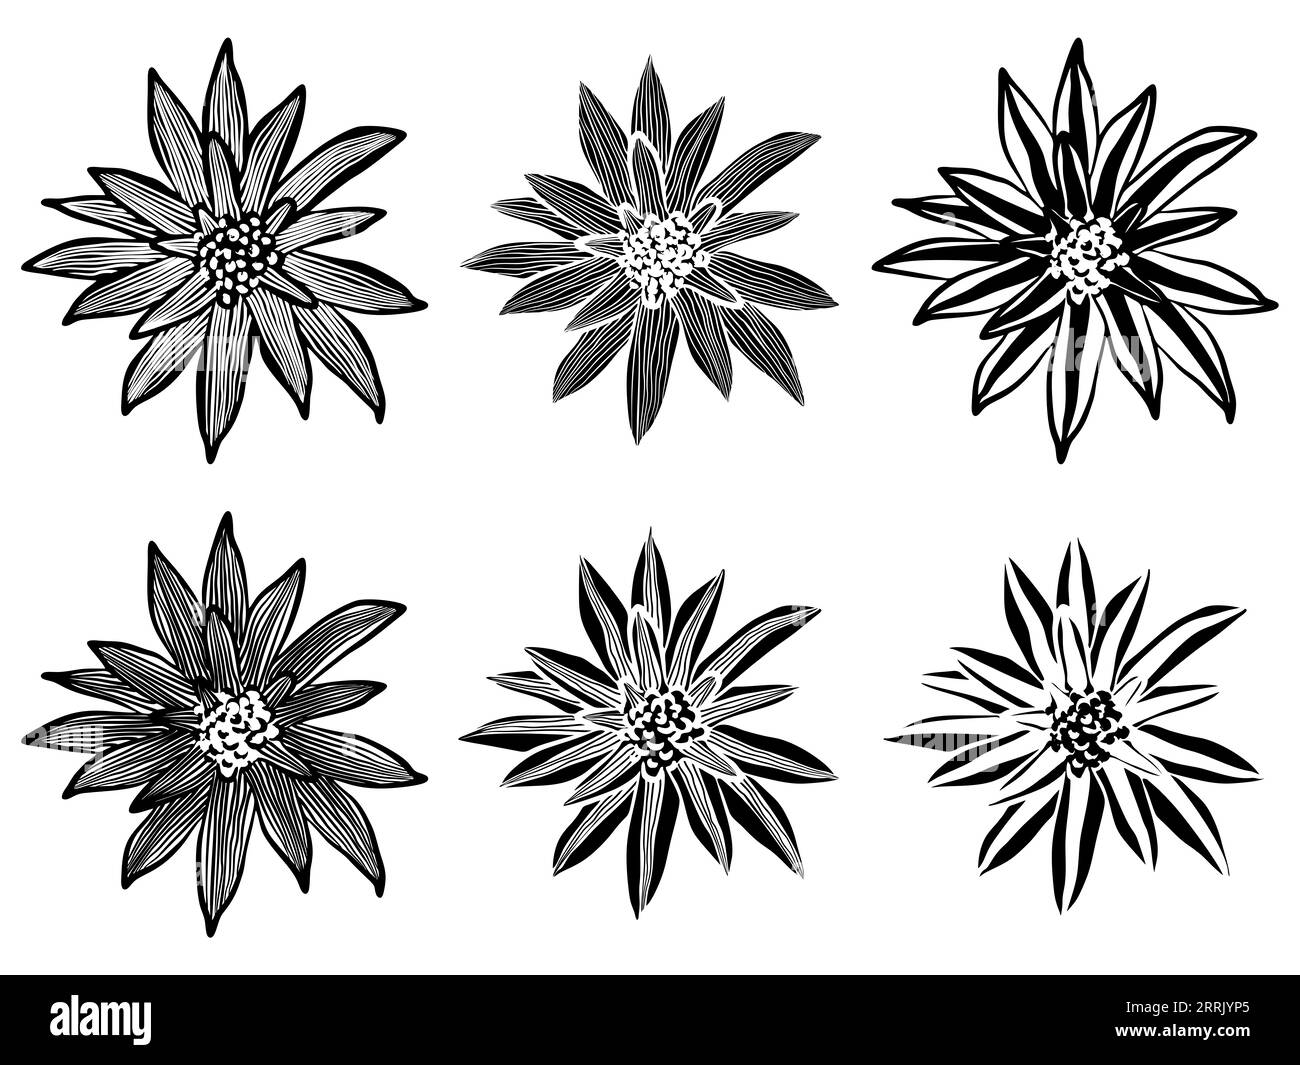 Llustration von Bromelien in schwarz-weißer, positiver und negativer Version Stockfoto